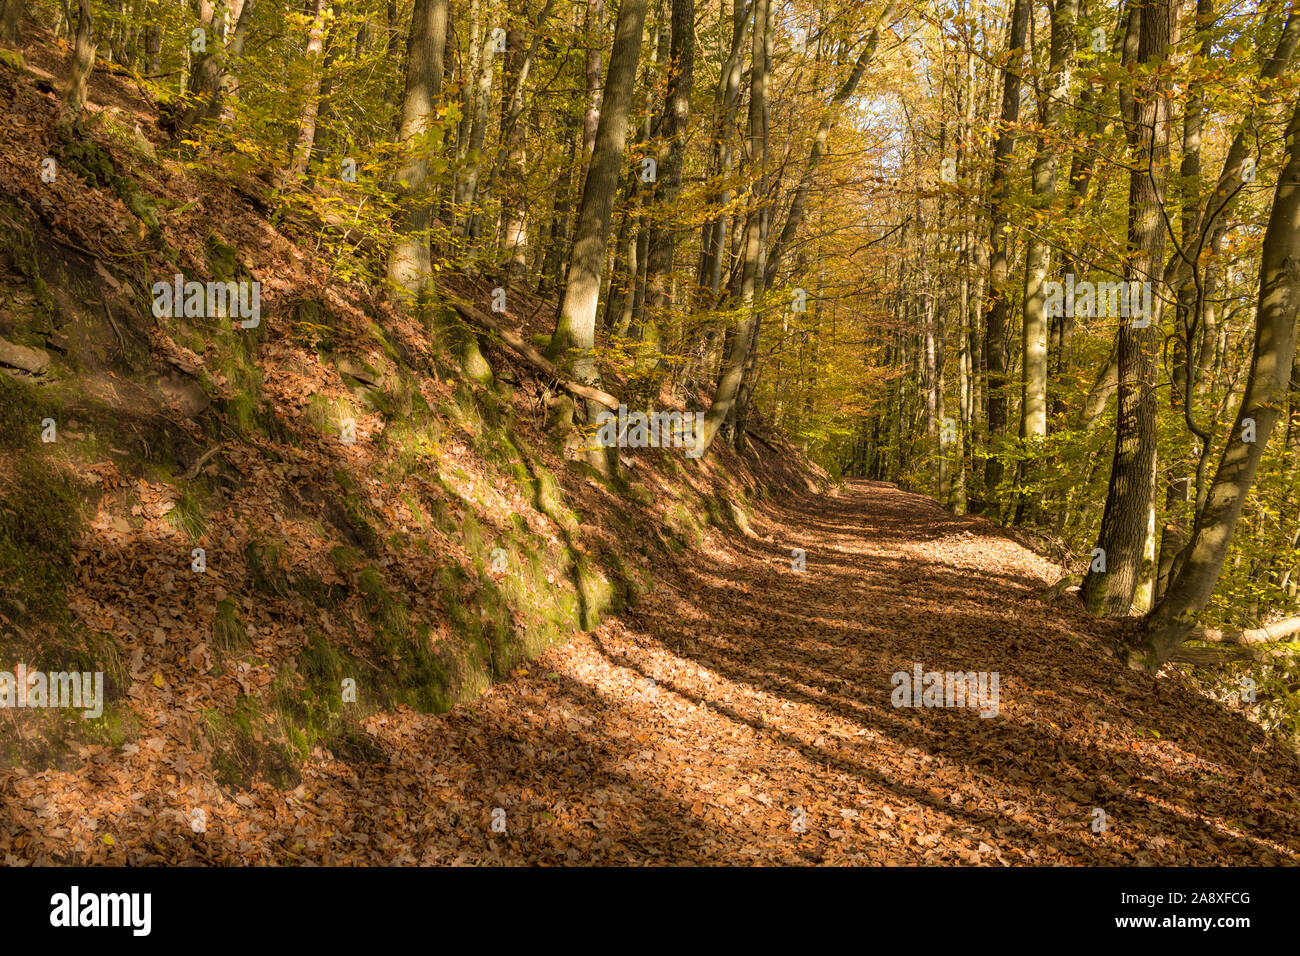 Chemin de randonnée en automne doré de la lumière dans une forêt allemande, idée pour pratiquer des activités de nature Banque D'Images